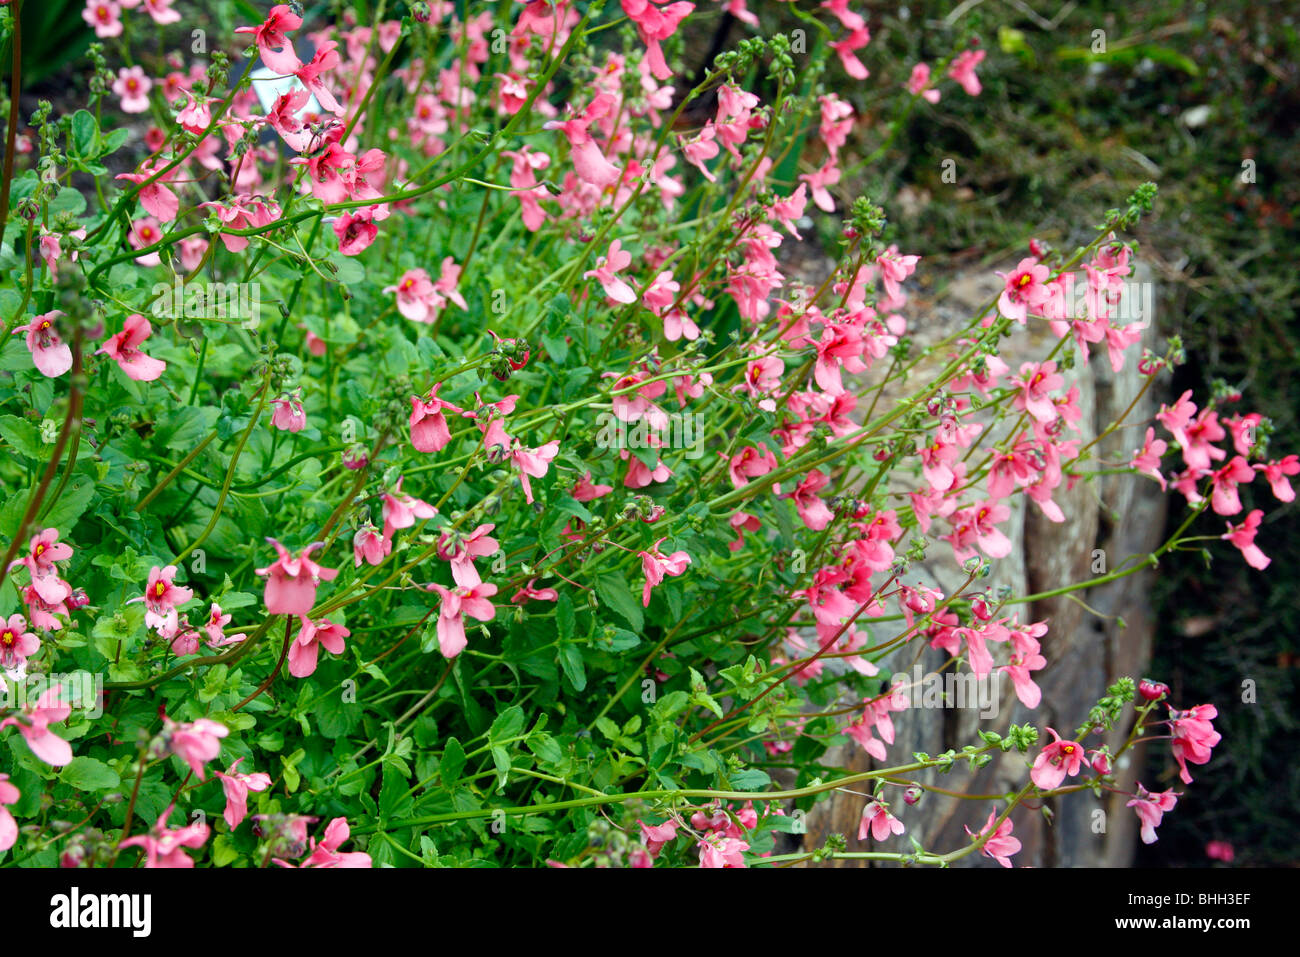 Diascia cordata syn Diascia barberae 'Fisher's Flora' AGM Stock Photo